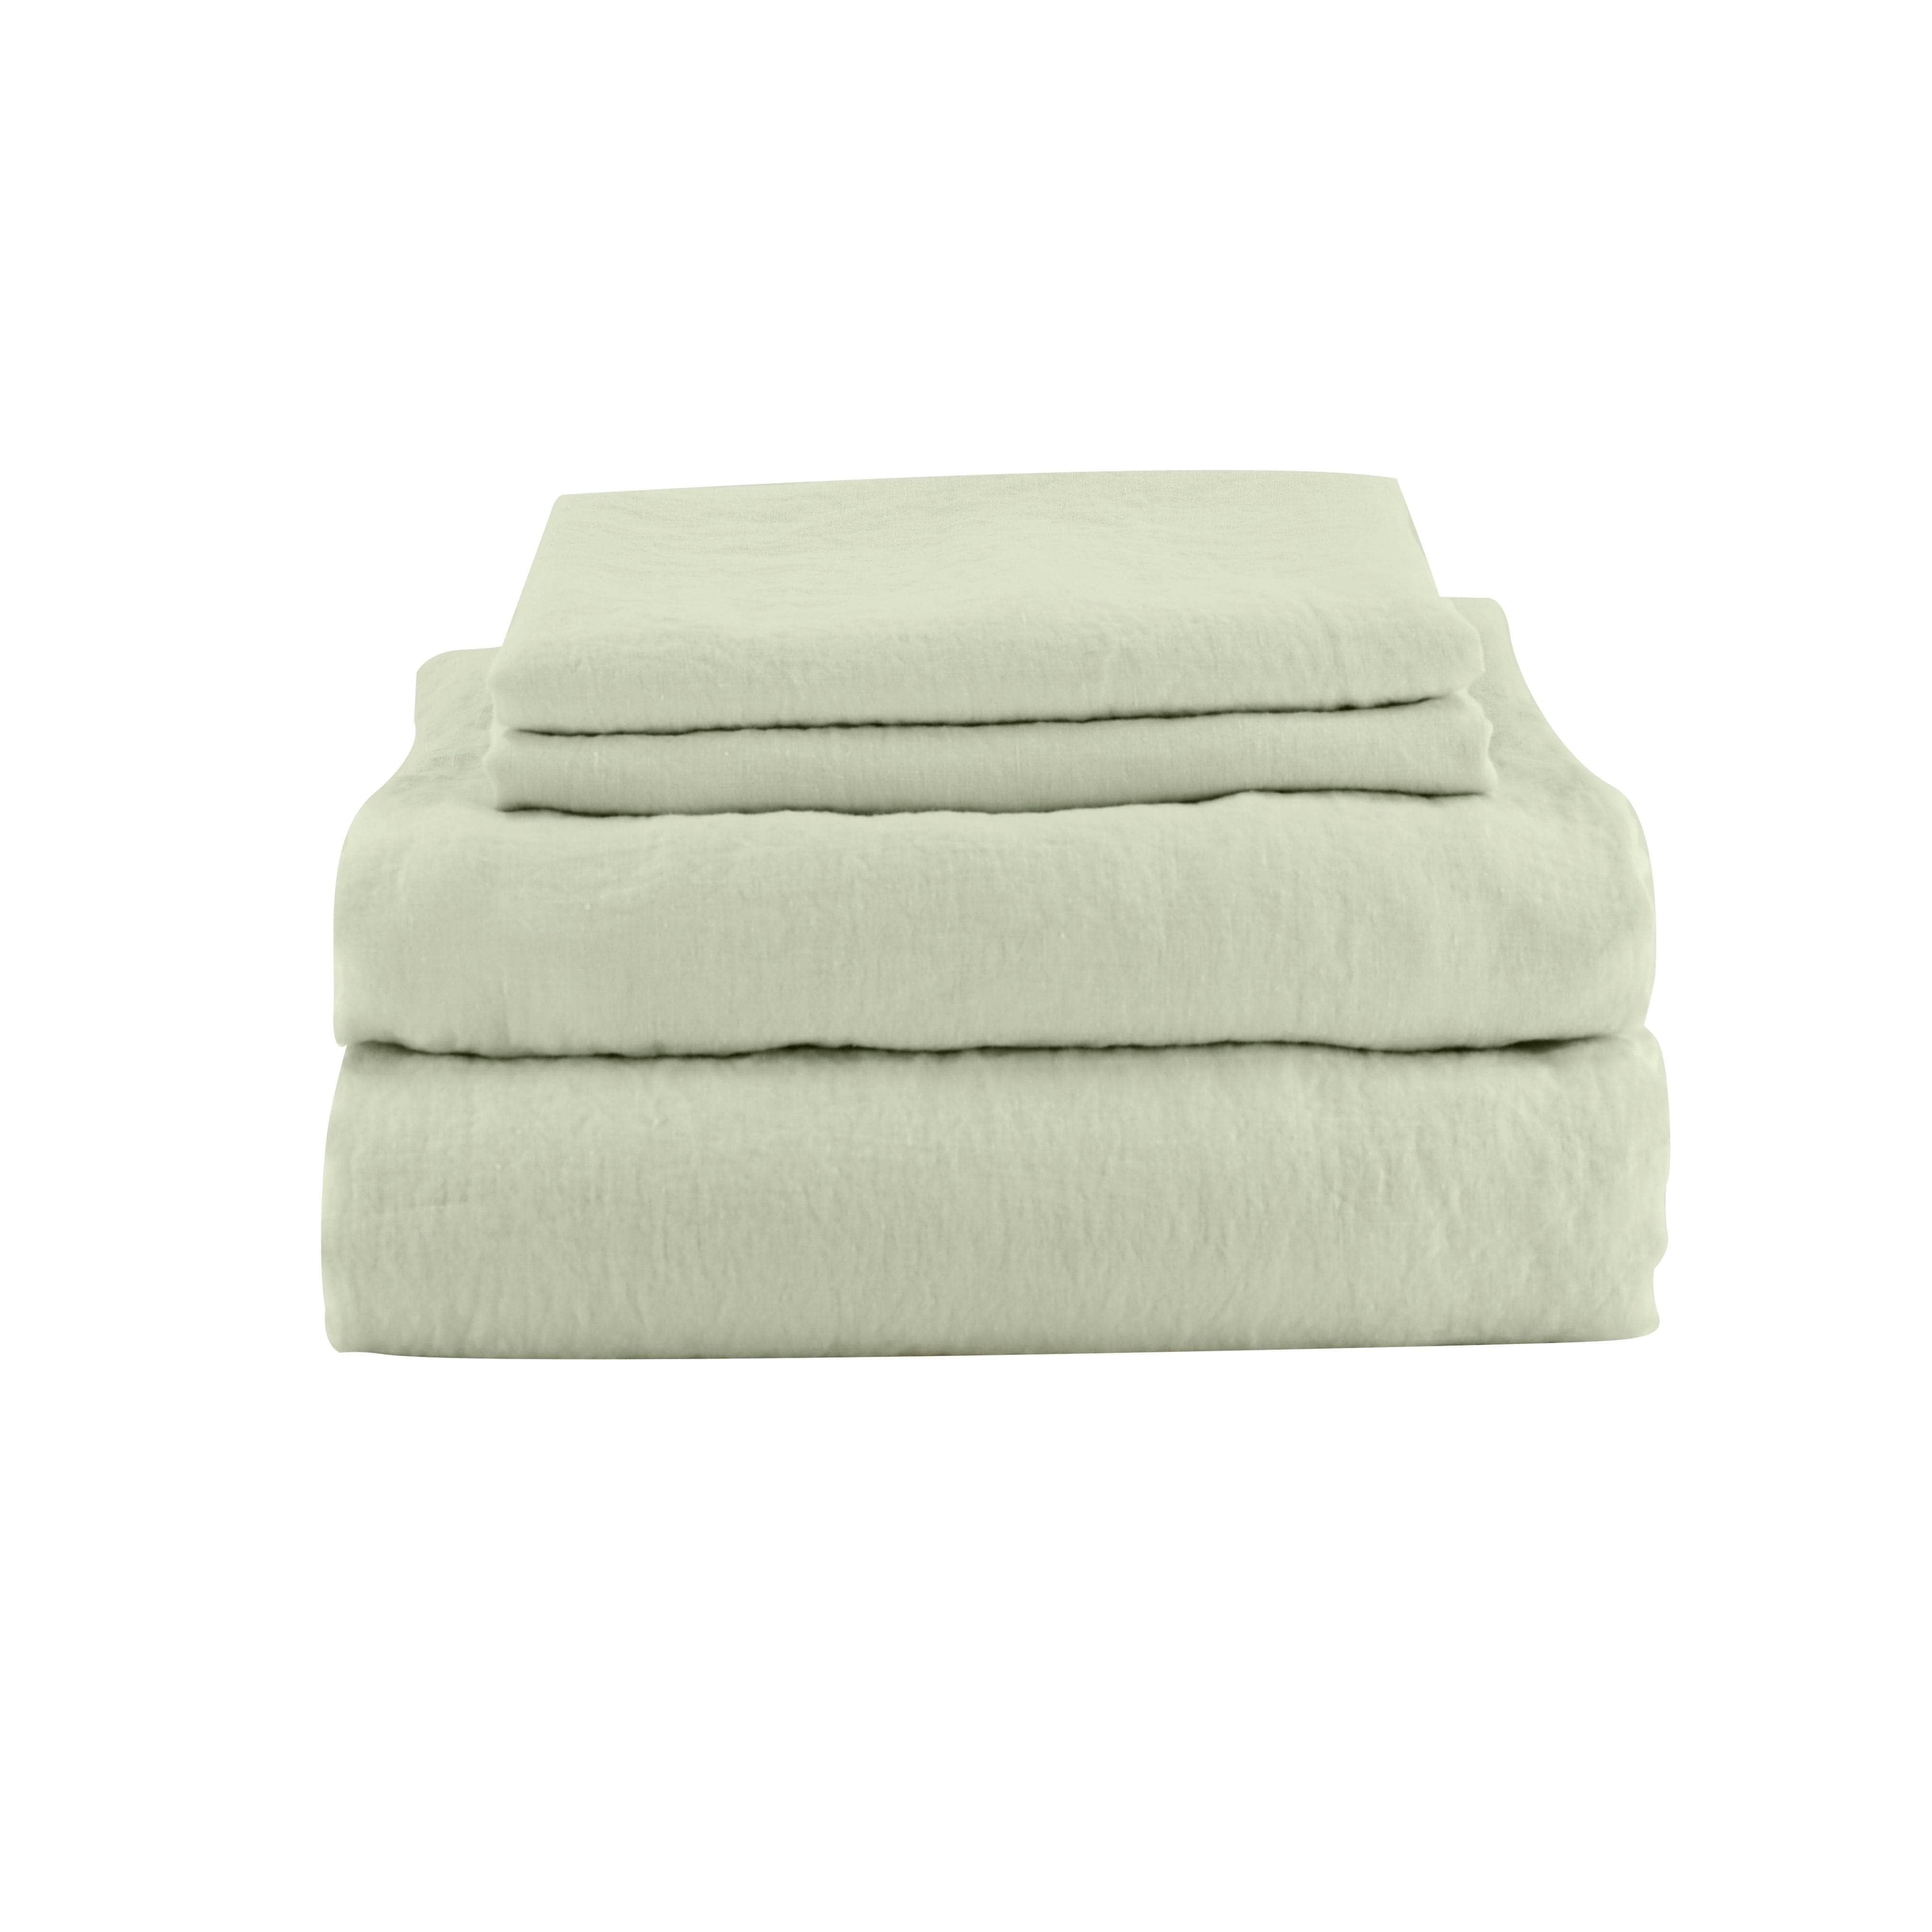 green linen bed sheet set including 2 pillowcases  1 flat sheet 1 fitted sheet